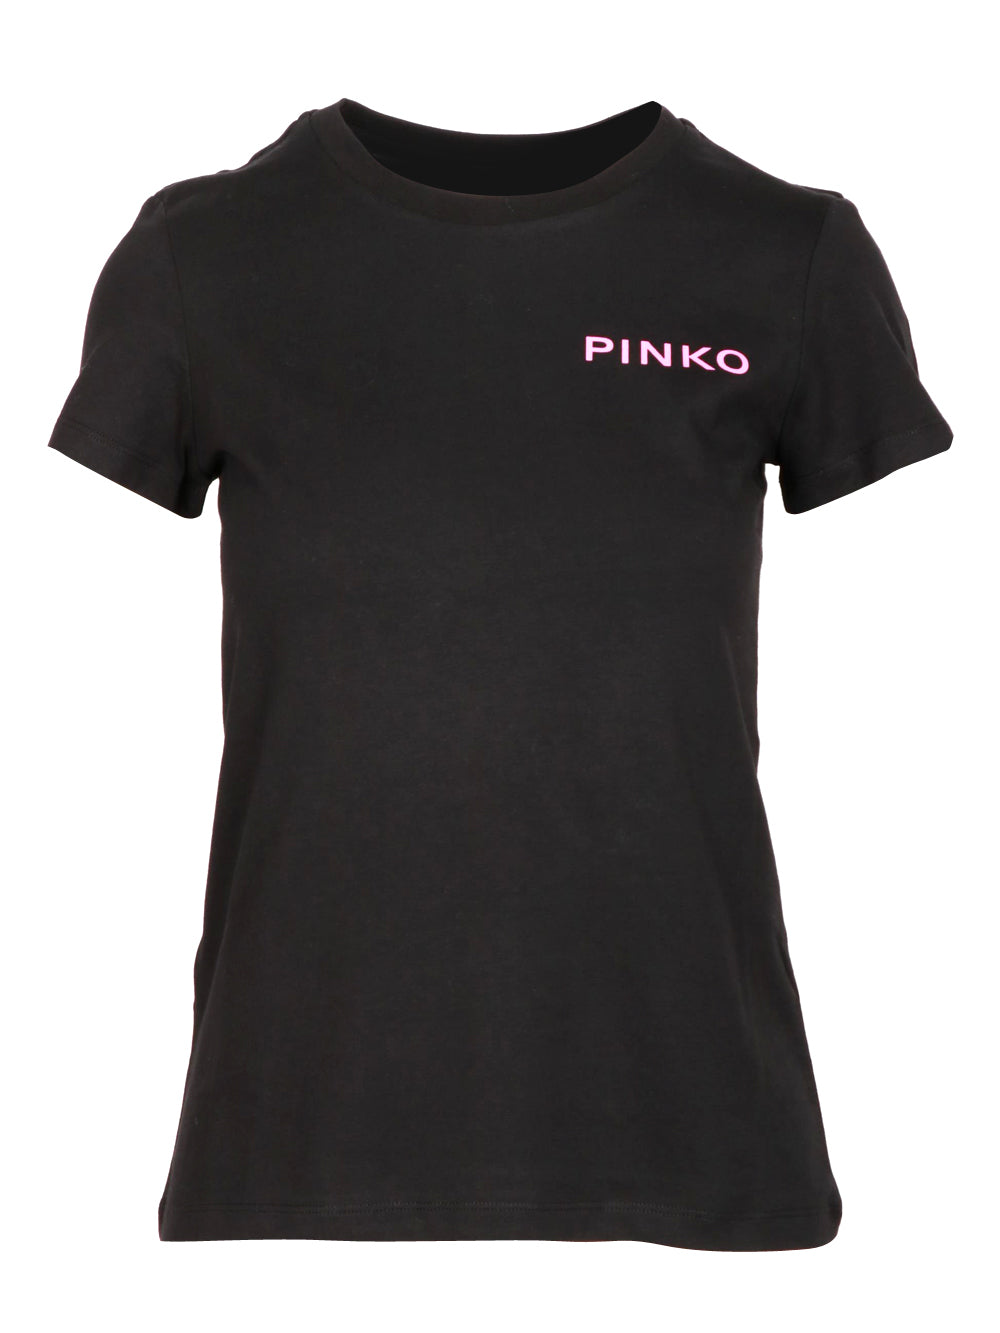 PINKO T-Shirt Bussolotto Girocollo in Cotone Nera con Logo e Scritta Fucsia Nero/fucsia